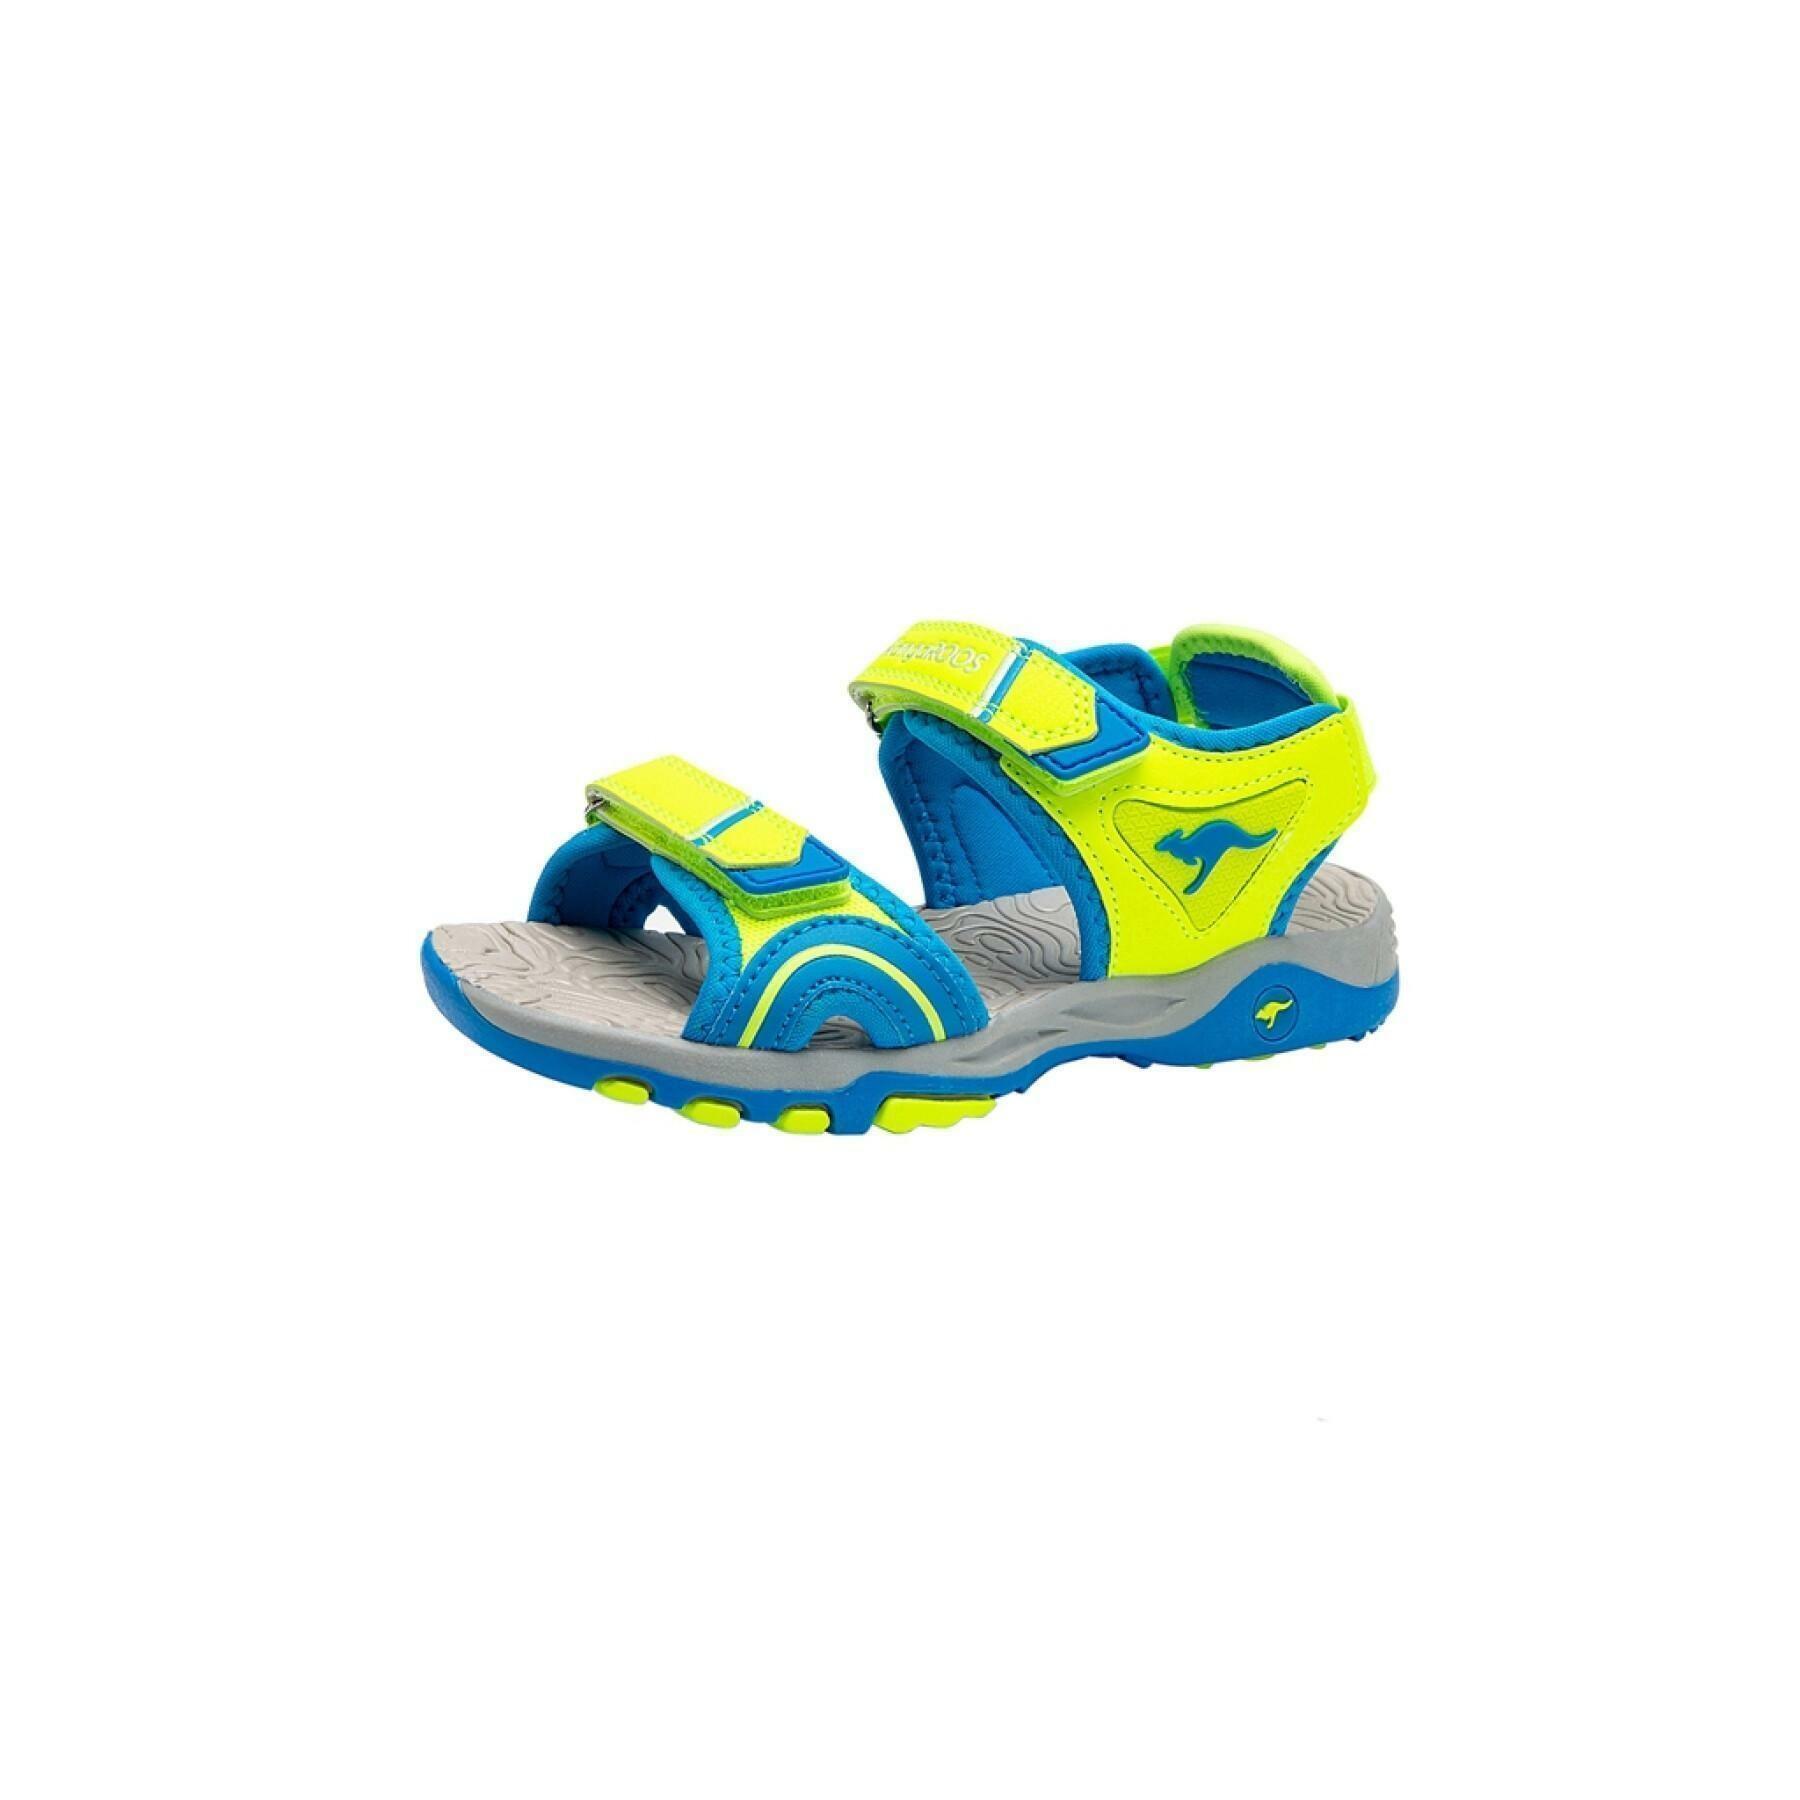 Sandali per bambini KangaROOS K-Track junior